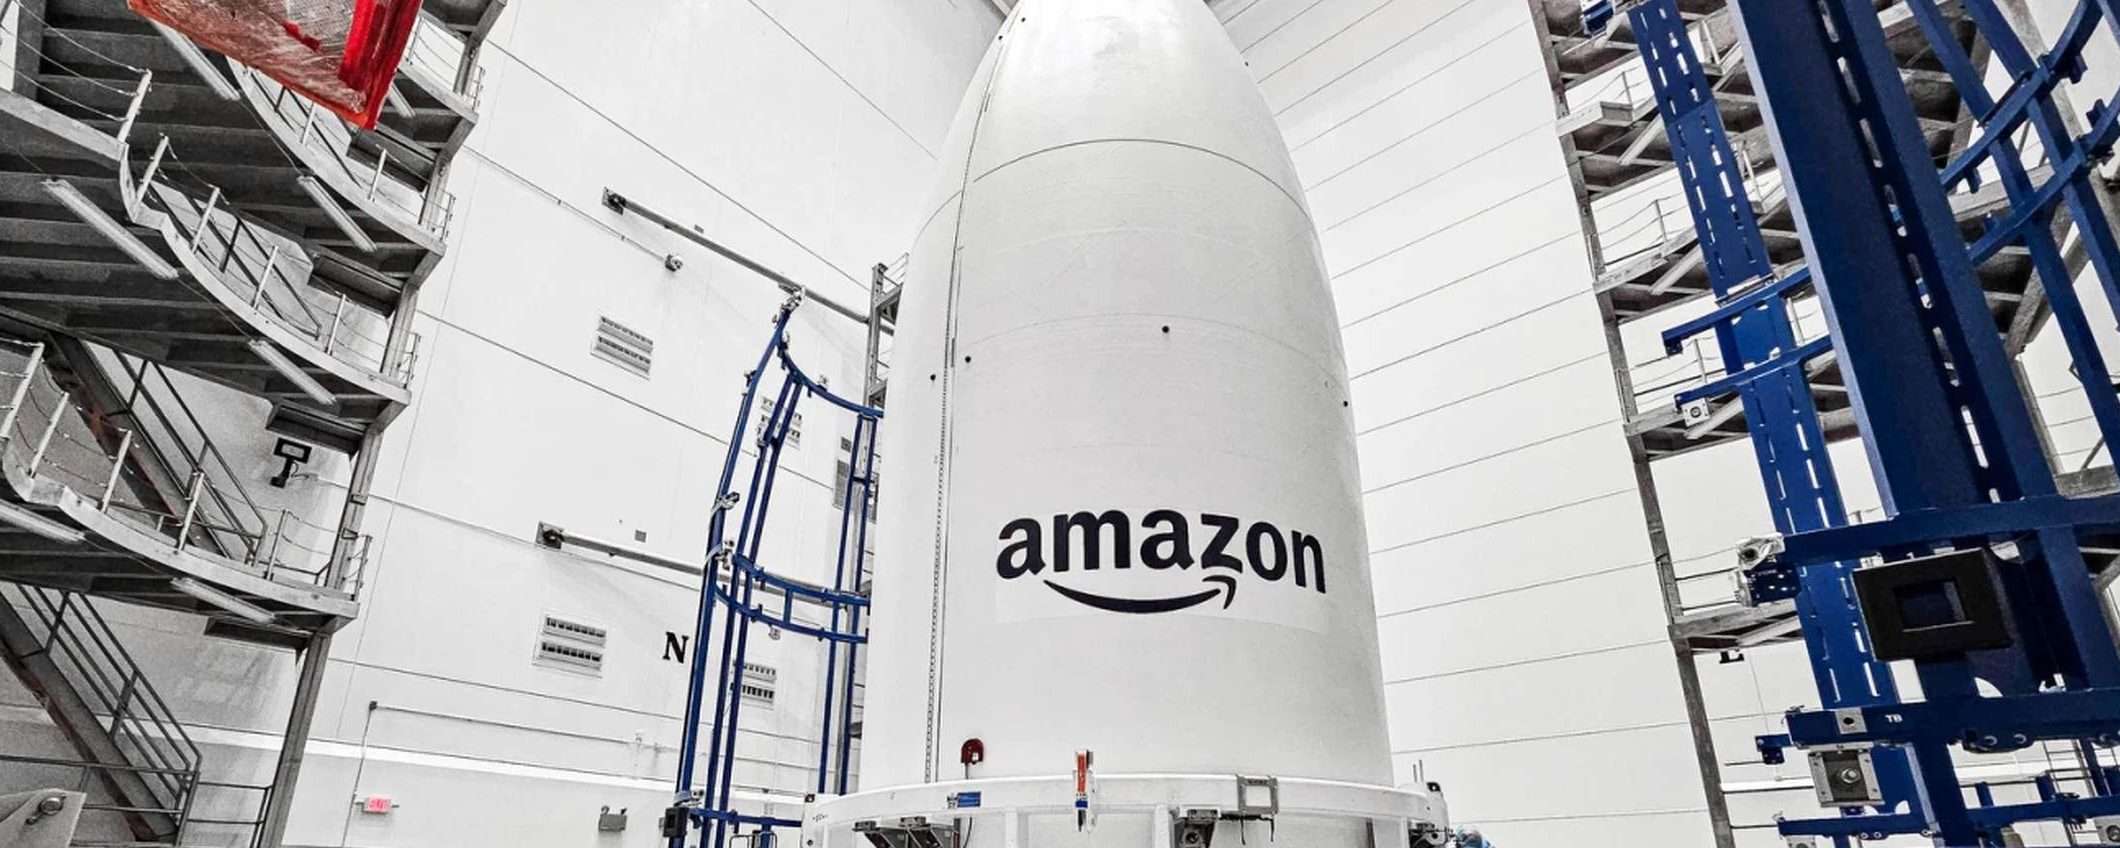 Project Kuiper: Amazon chiede aiuto a SpaceX